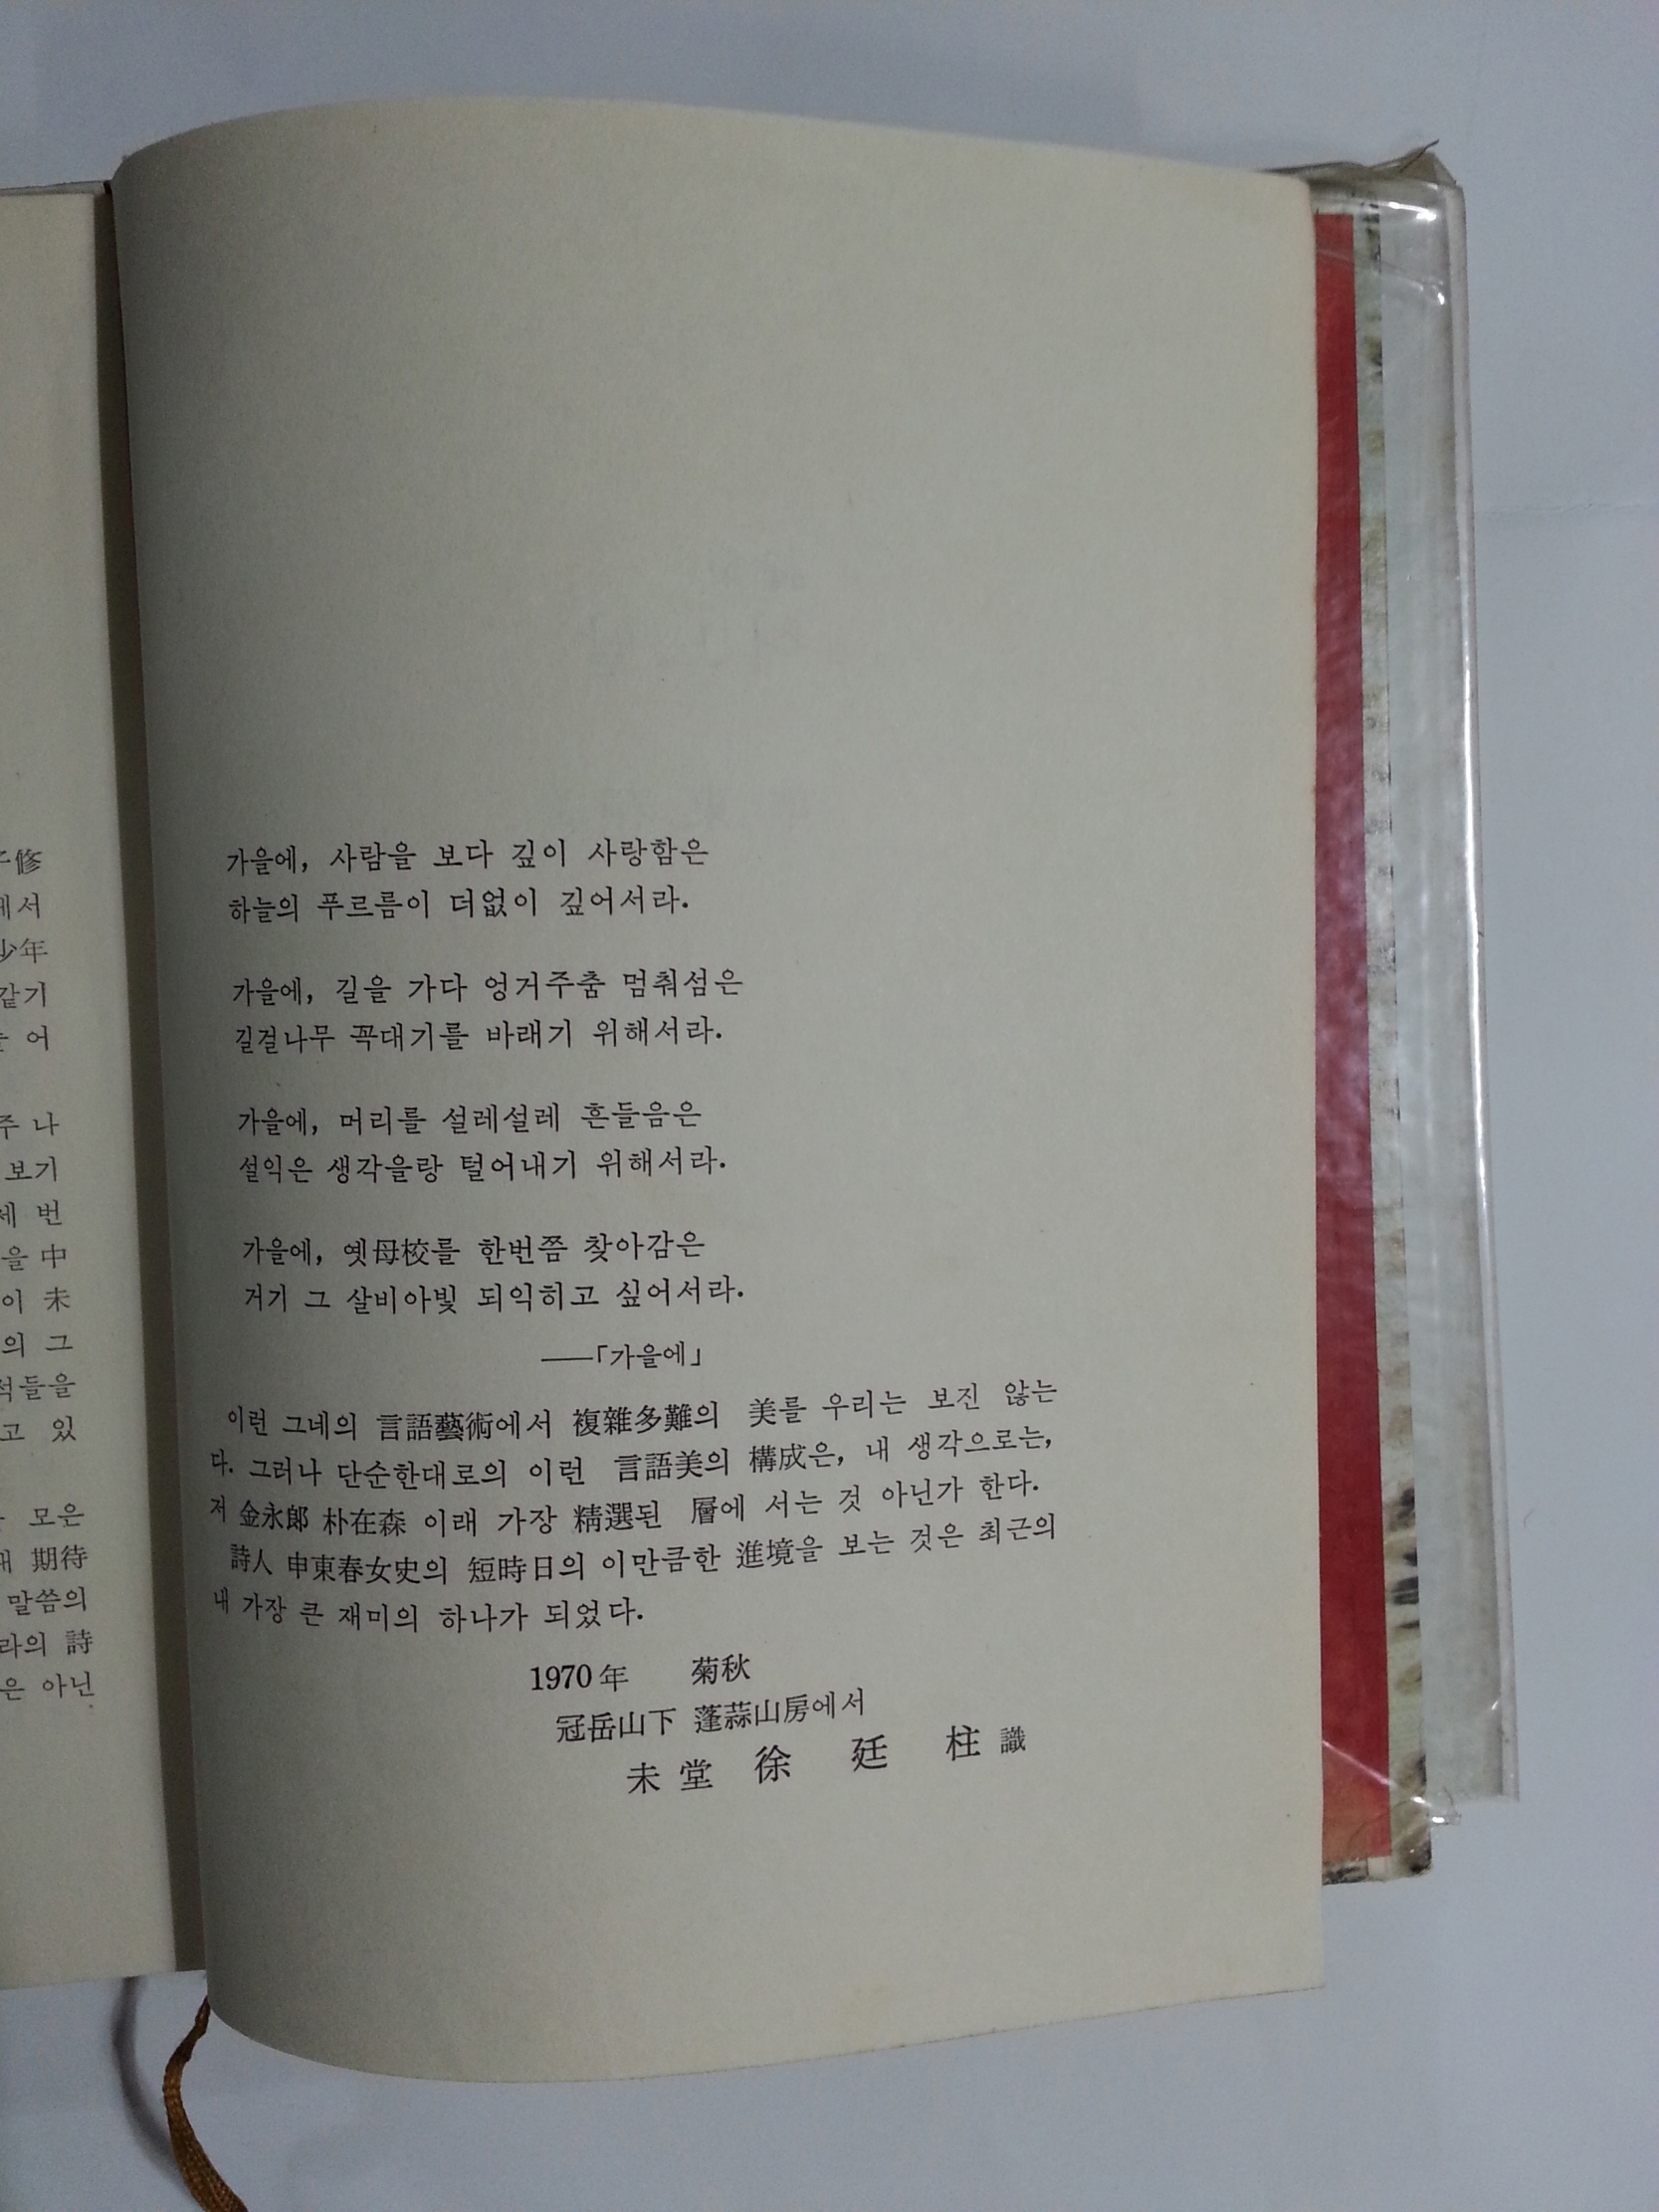 어느 날 (신동춘 제1시집, 1970년 판권지낙장, 저자증정본)